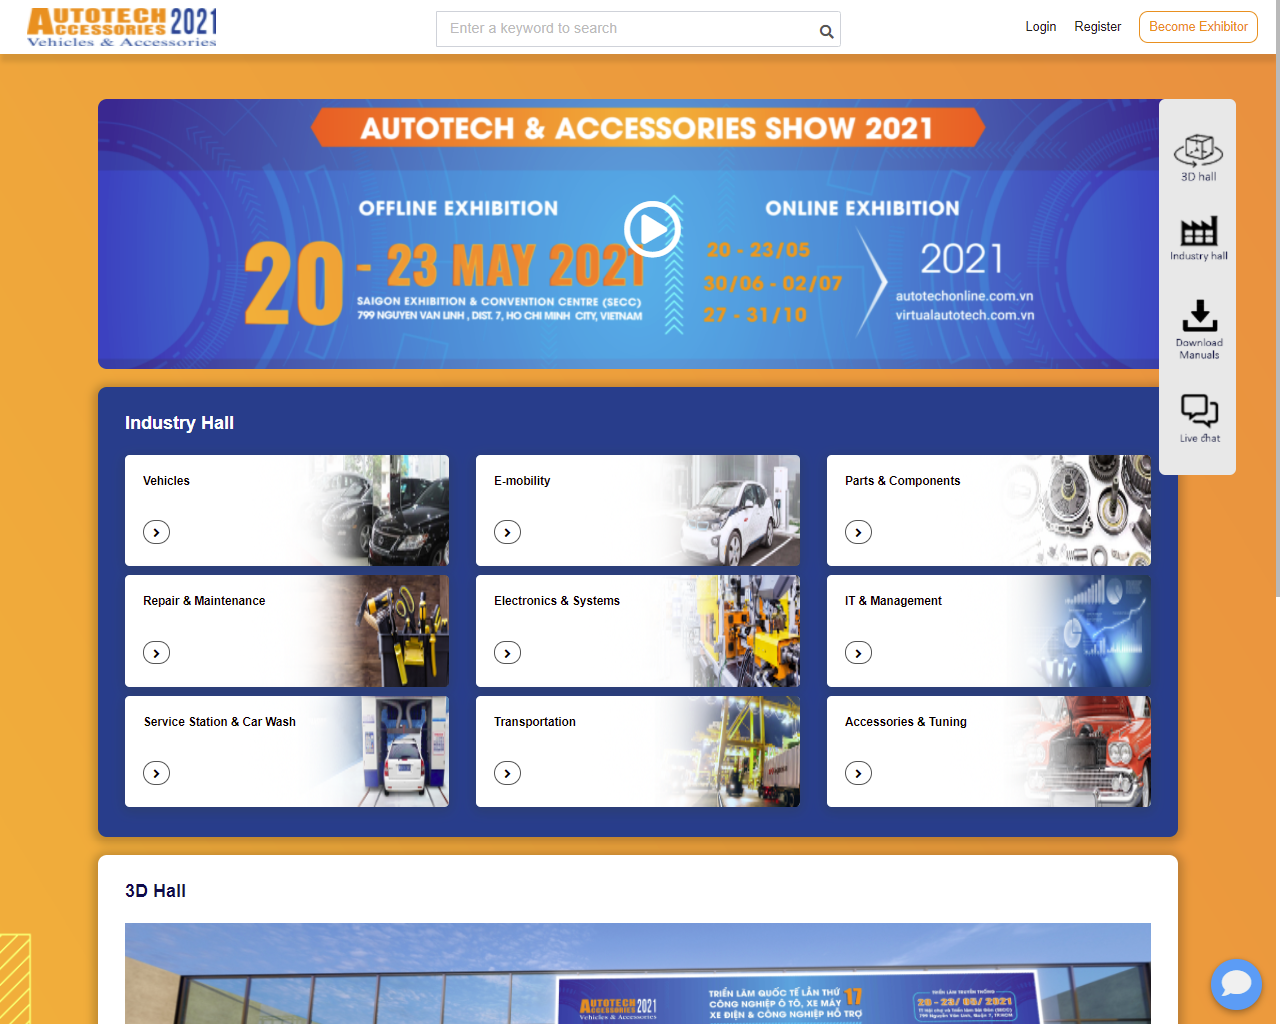 Triển lãm Autotech & Accessories 2021 chuyển đổi hoàn toàn sang hình thức trực tuyến